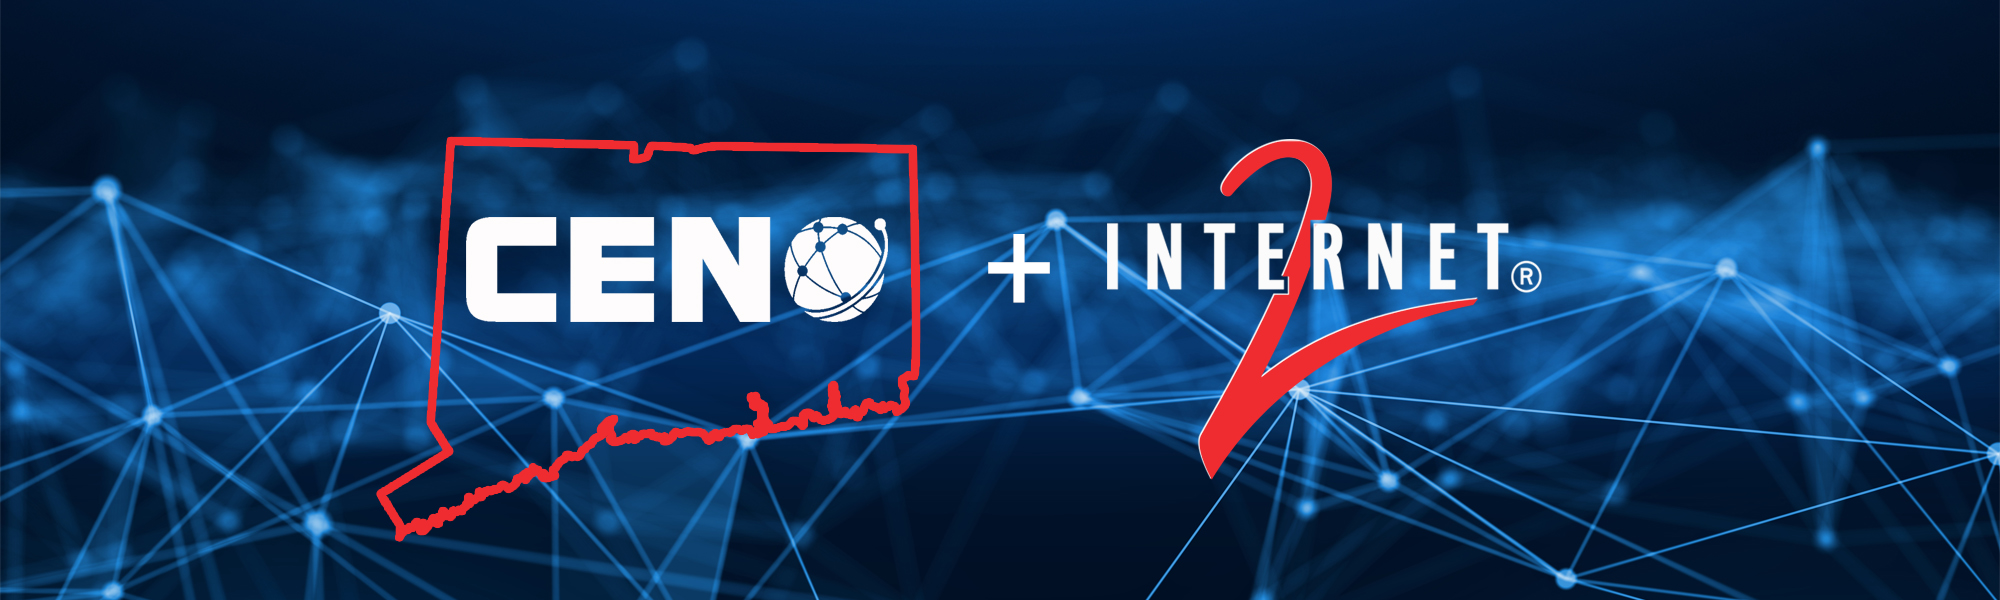 CEN logo and Internet2 logo